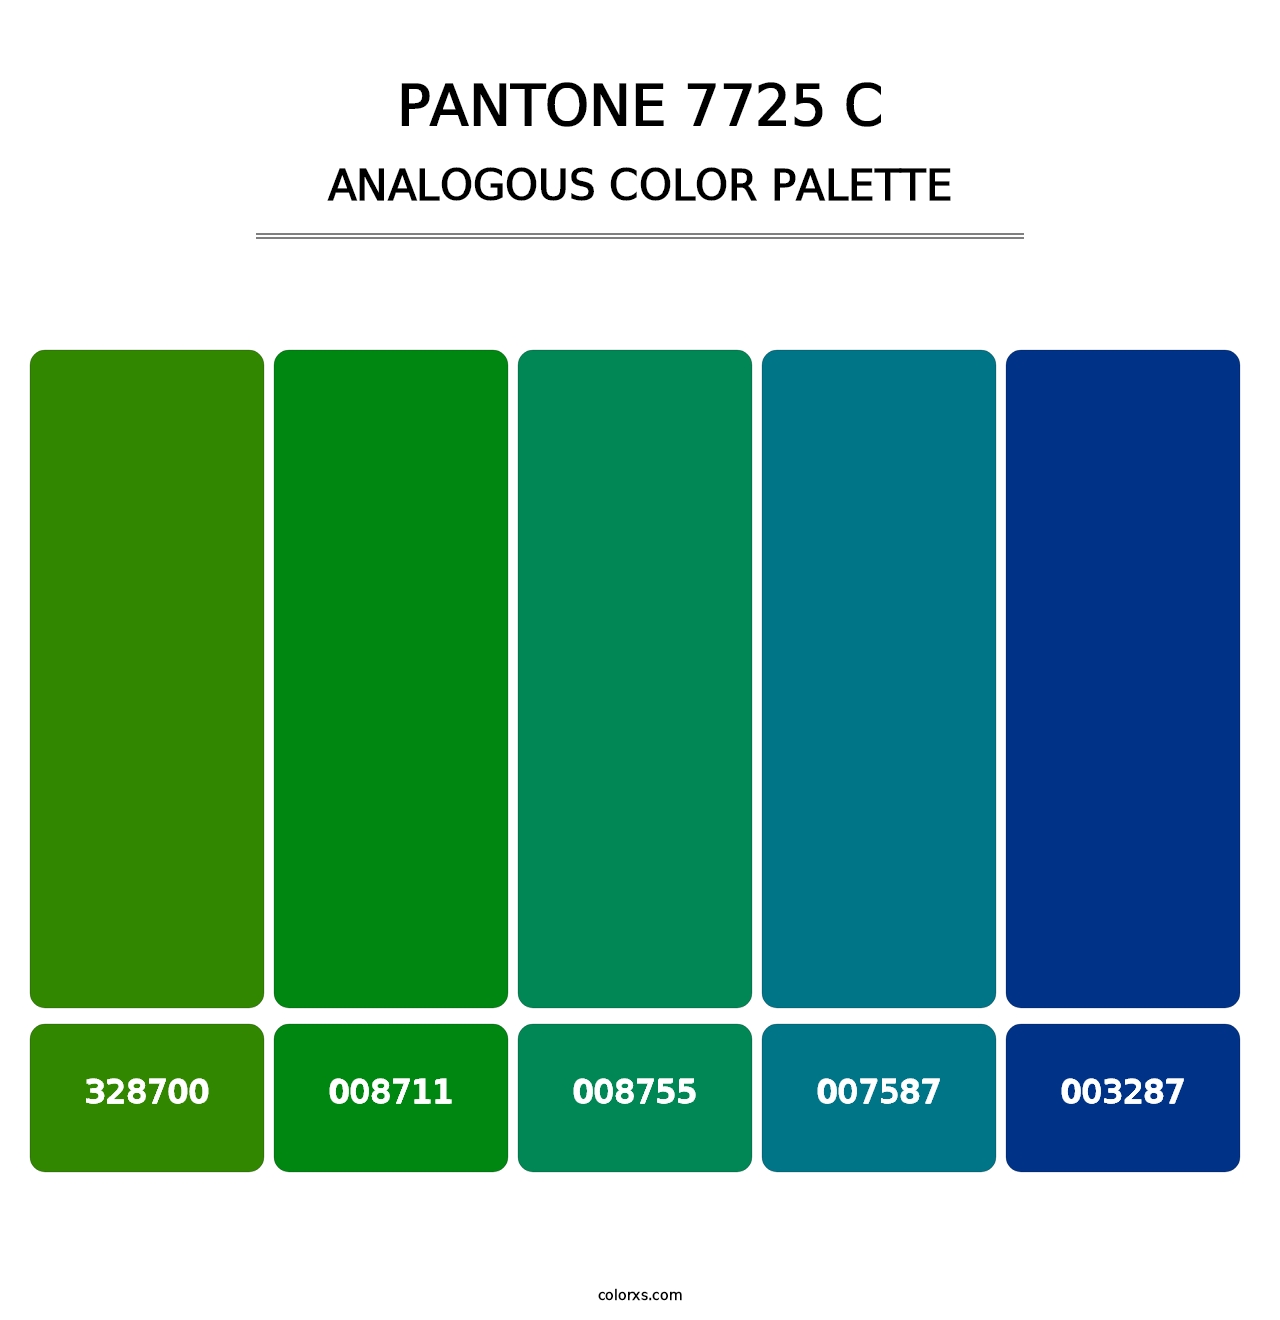 PANTONE 7725 C - Analogous Color Palette